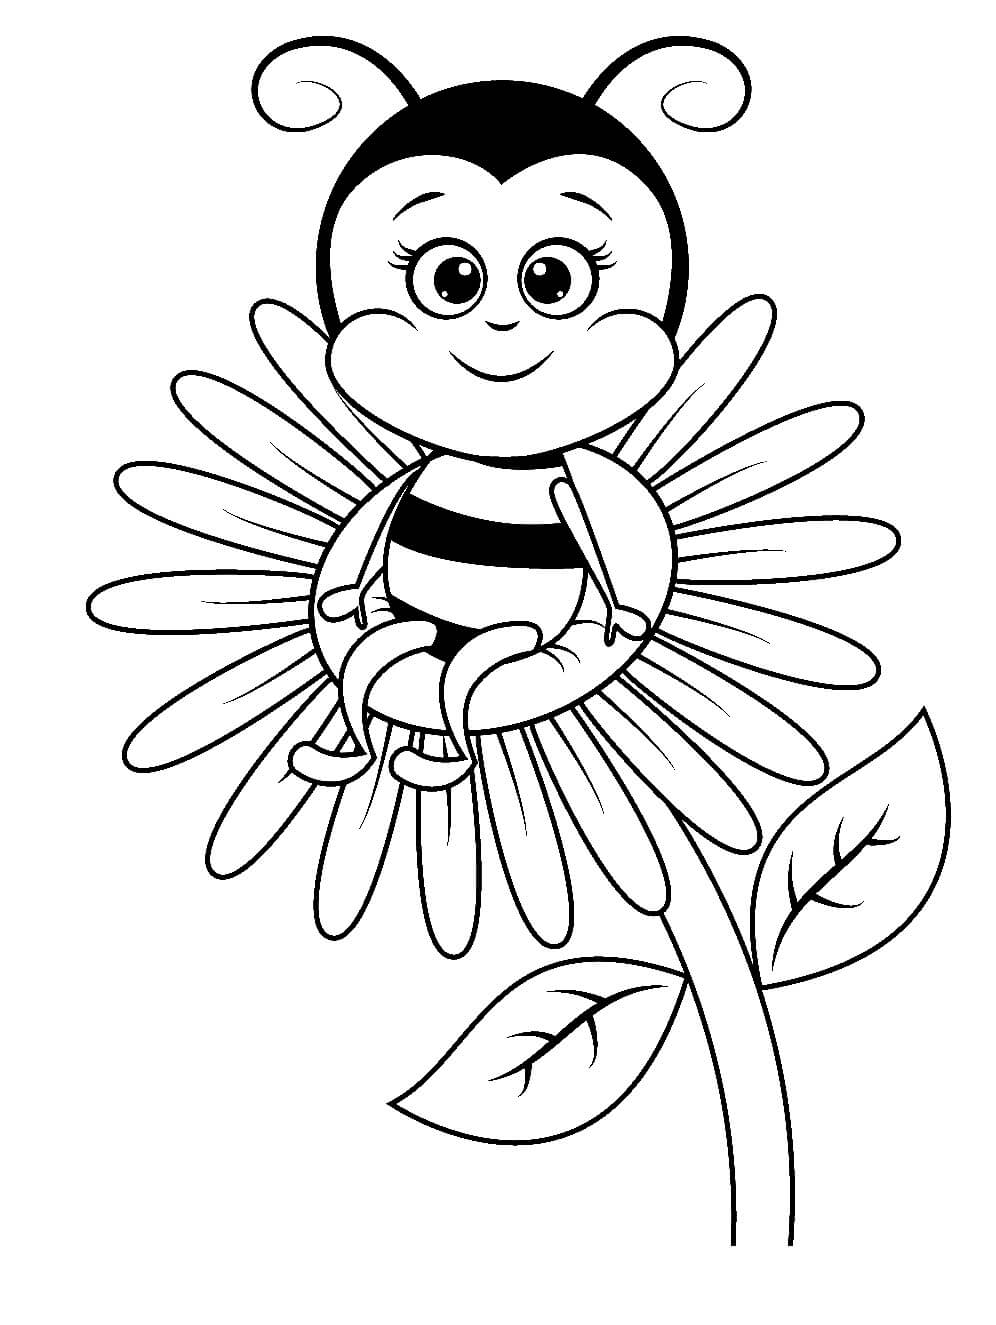 نحلة الكرتون تجلس على زهرة تلوين